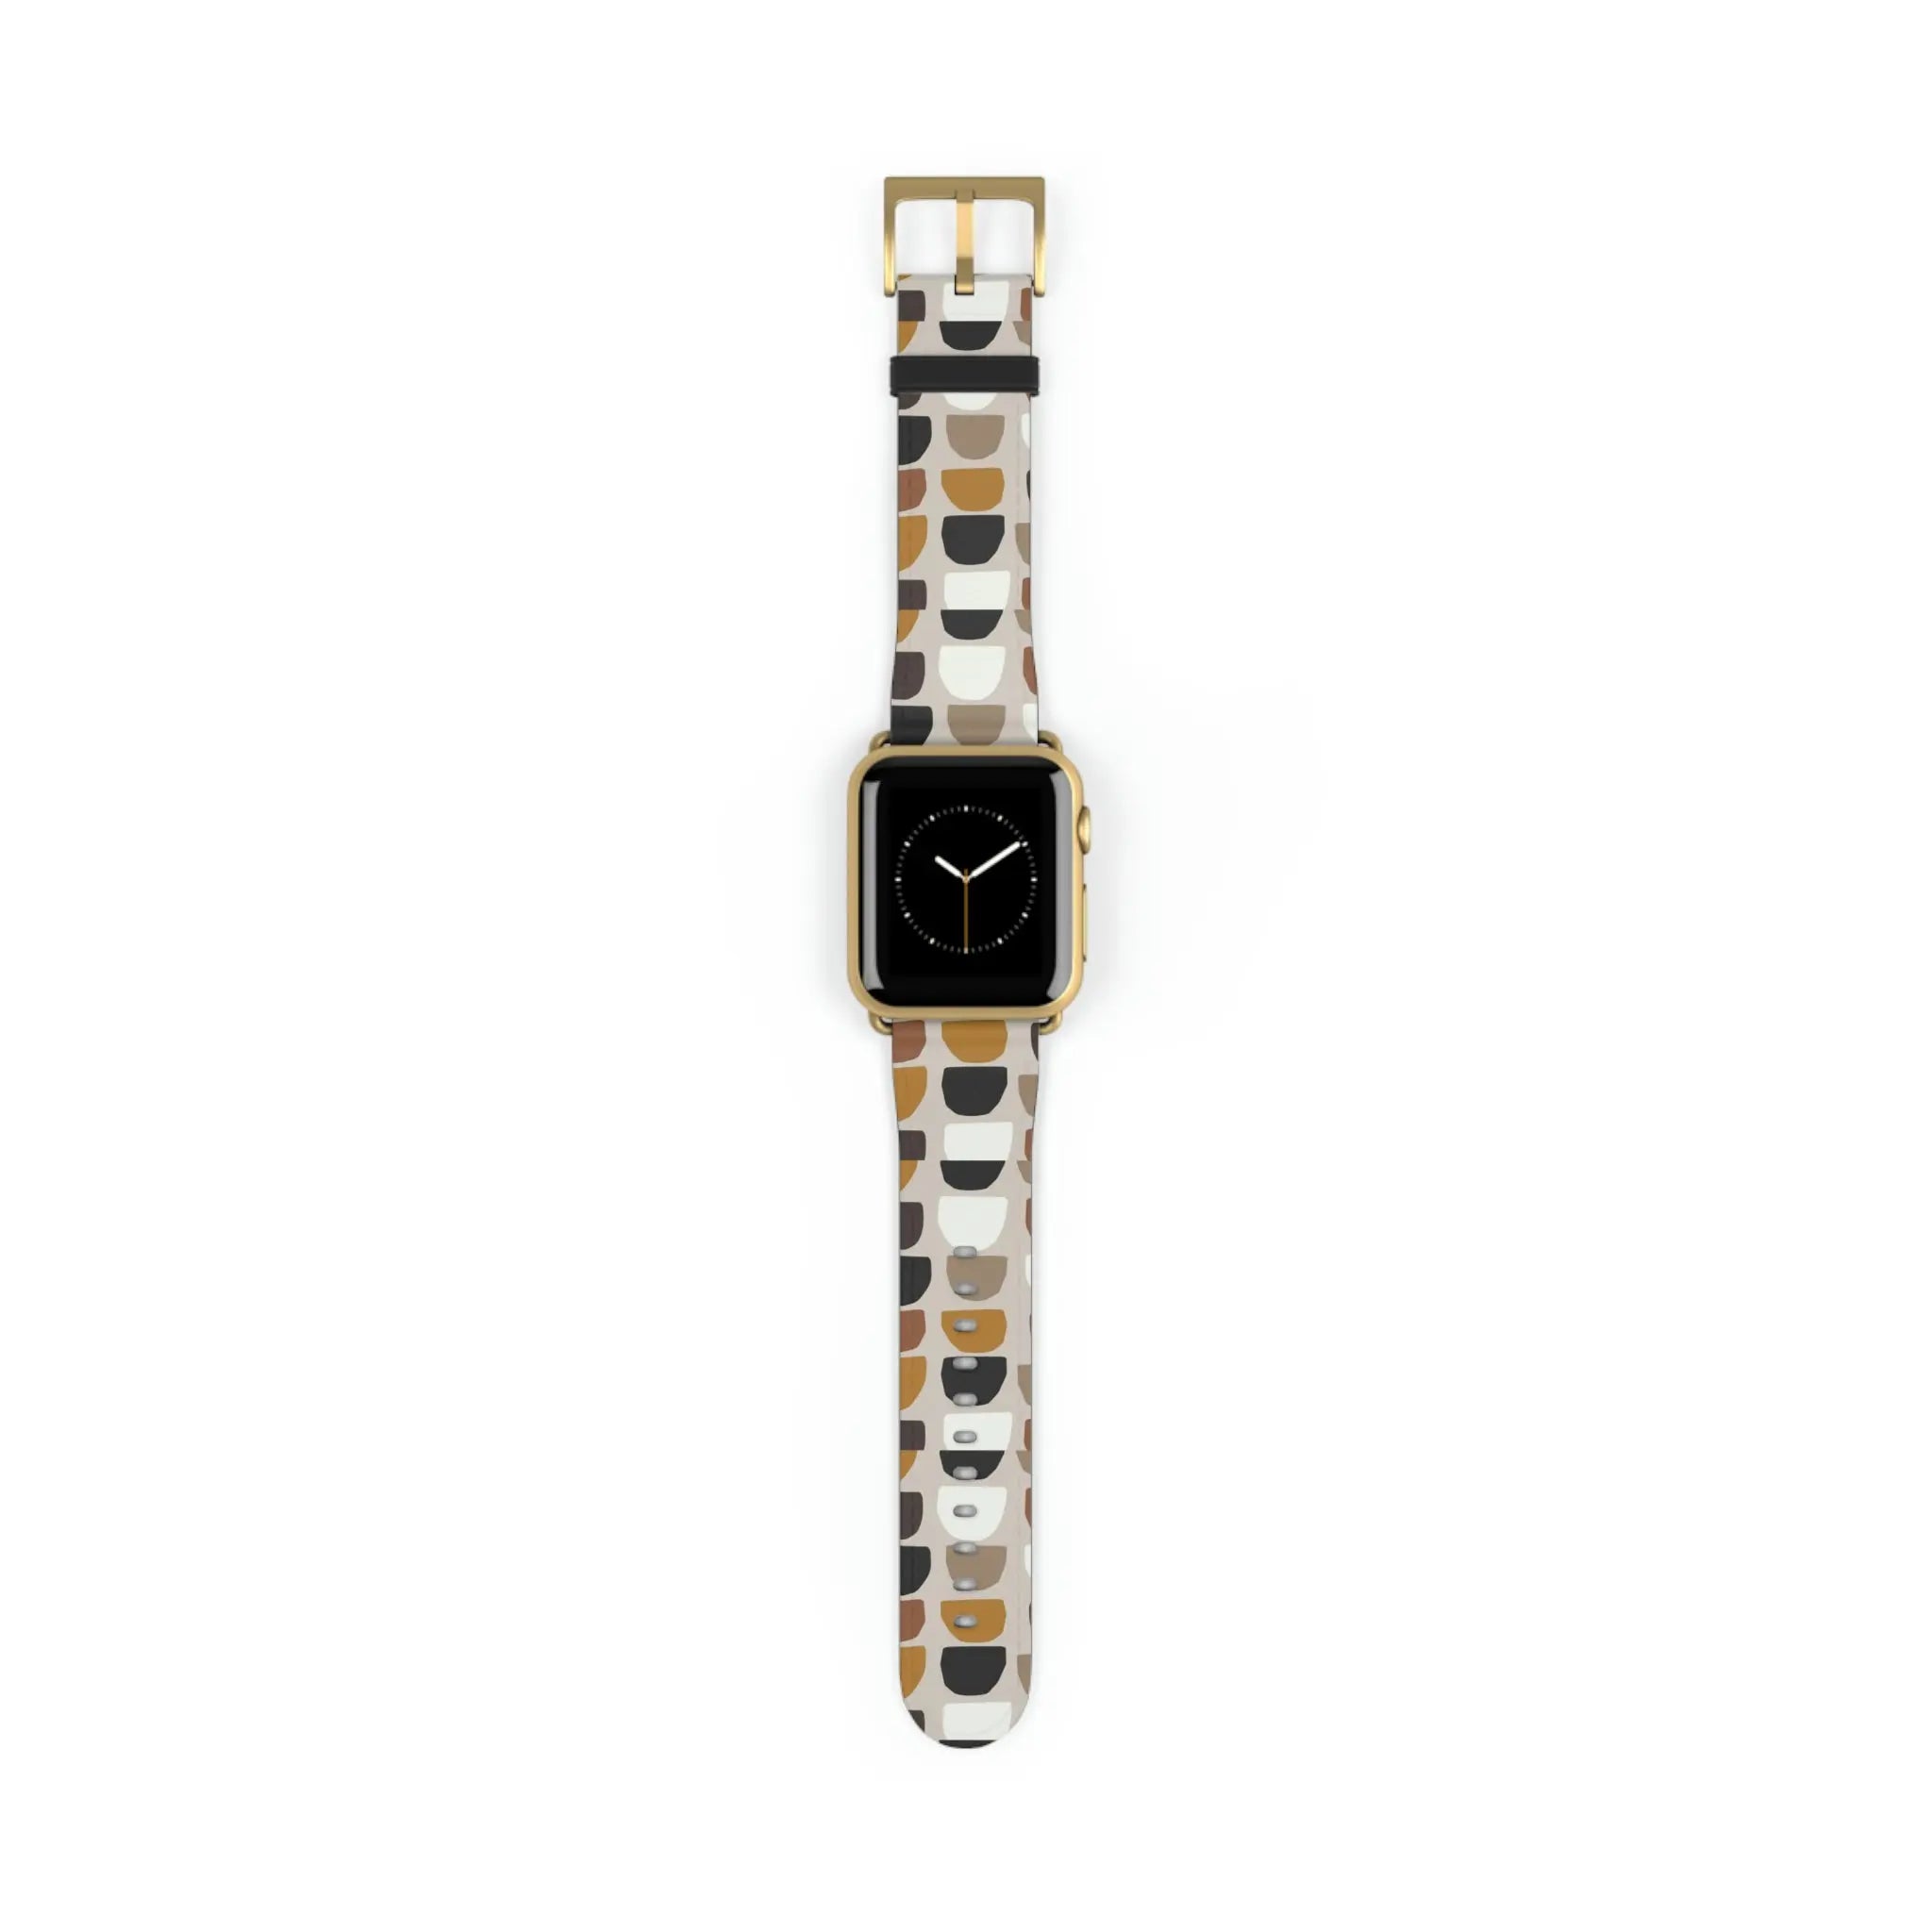  Boho (Khaki) Apple Watch Band Watch Band38-41mmGoldMatte